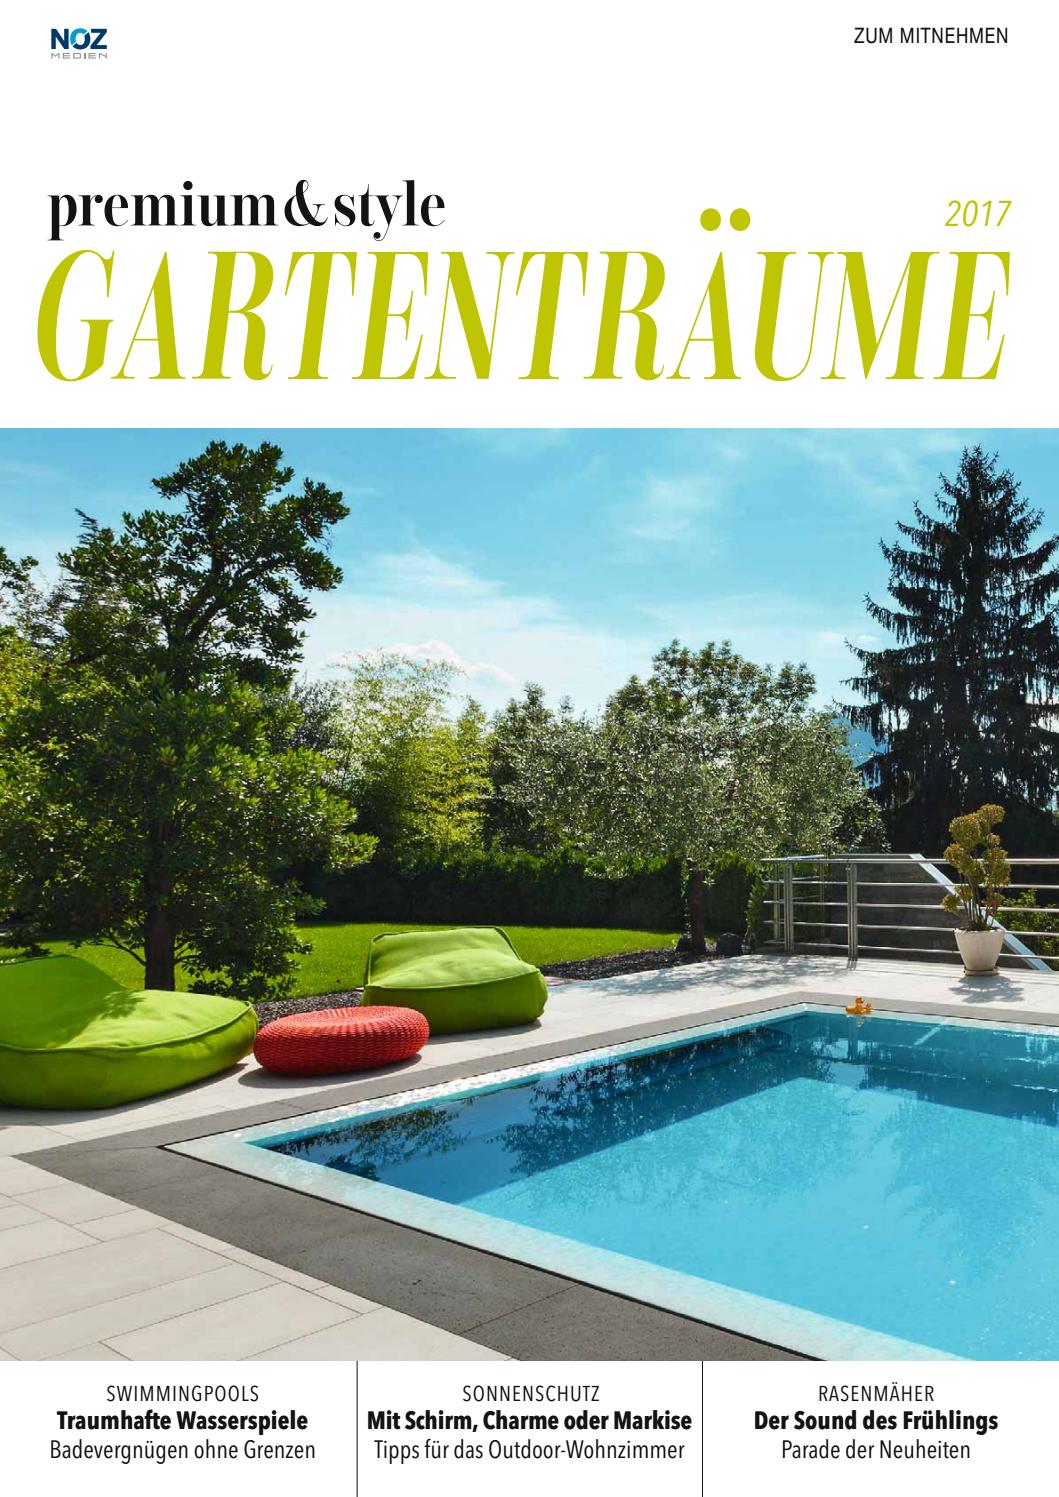 Origineller Sichtschutz Garten Genial P&s Ausgabe Gartenträume 2017 by Neue Osnabruecker Zeitung